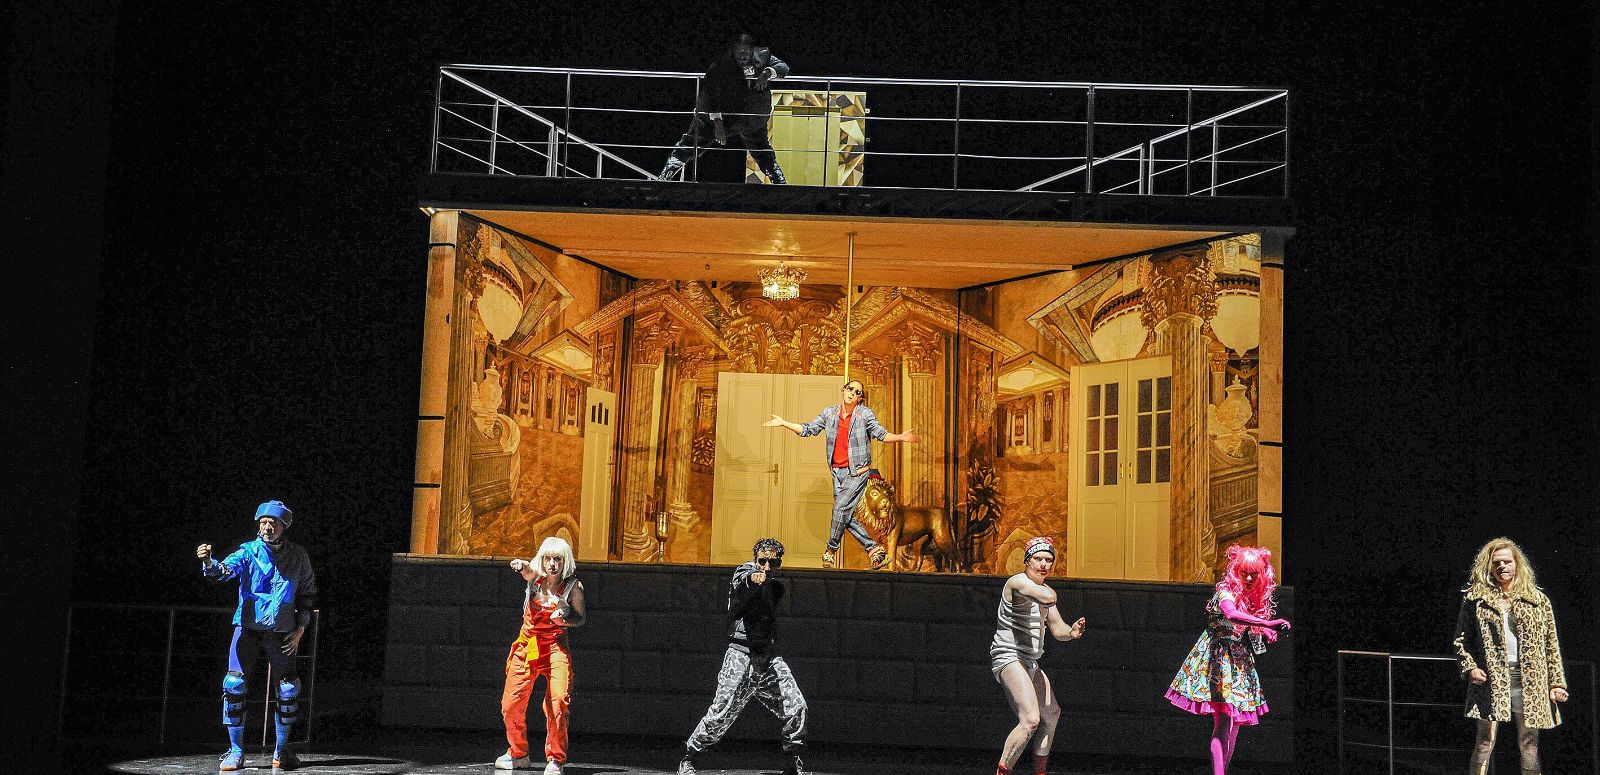 Sechs Personen tanzen vor einem Bühnenbild, das ein golden ausgeleuchtetes, unmöbliertes Zimmer darstellt. In diesem Zimmer tanzt eine weitere Person.